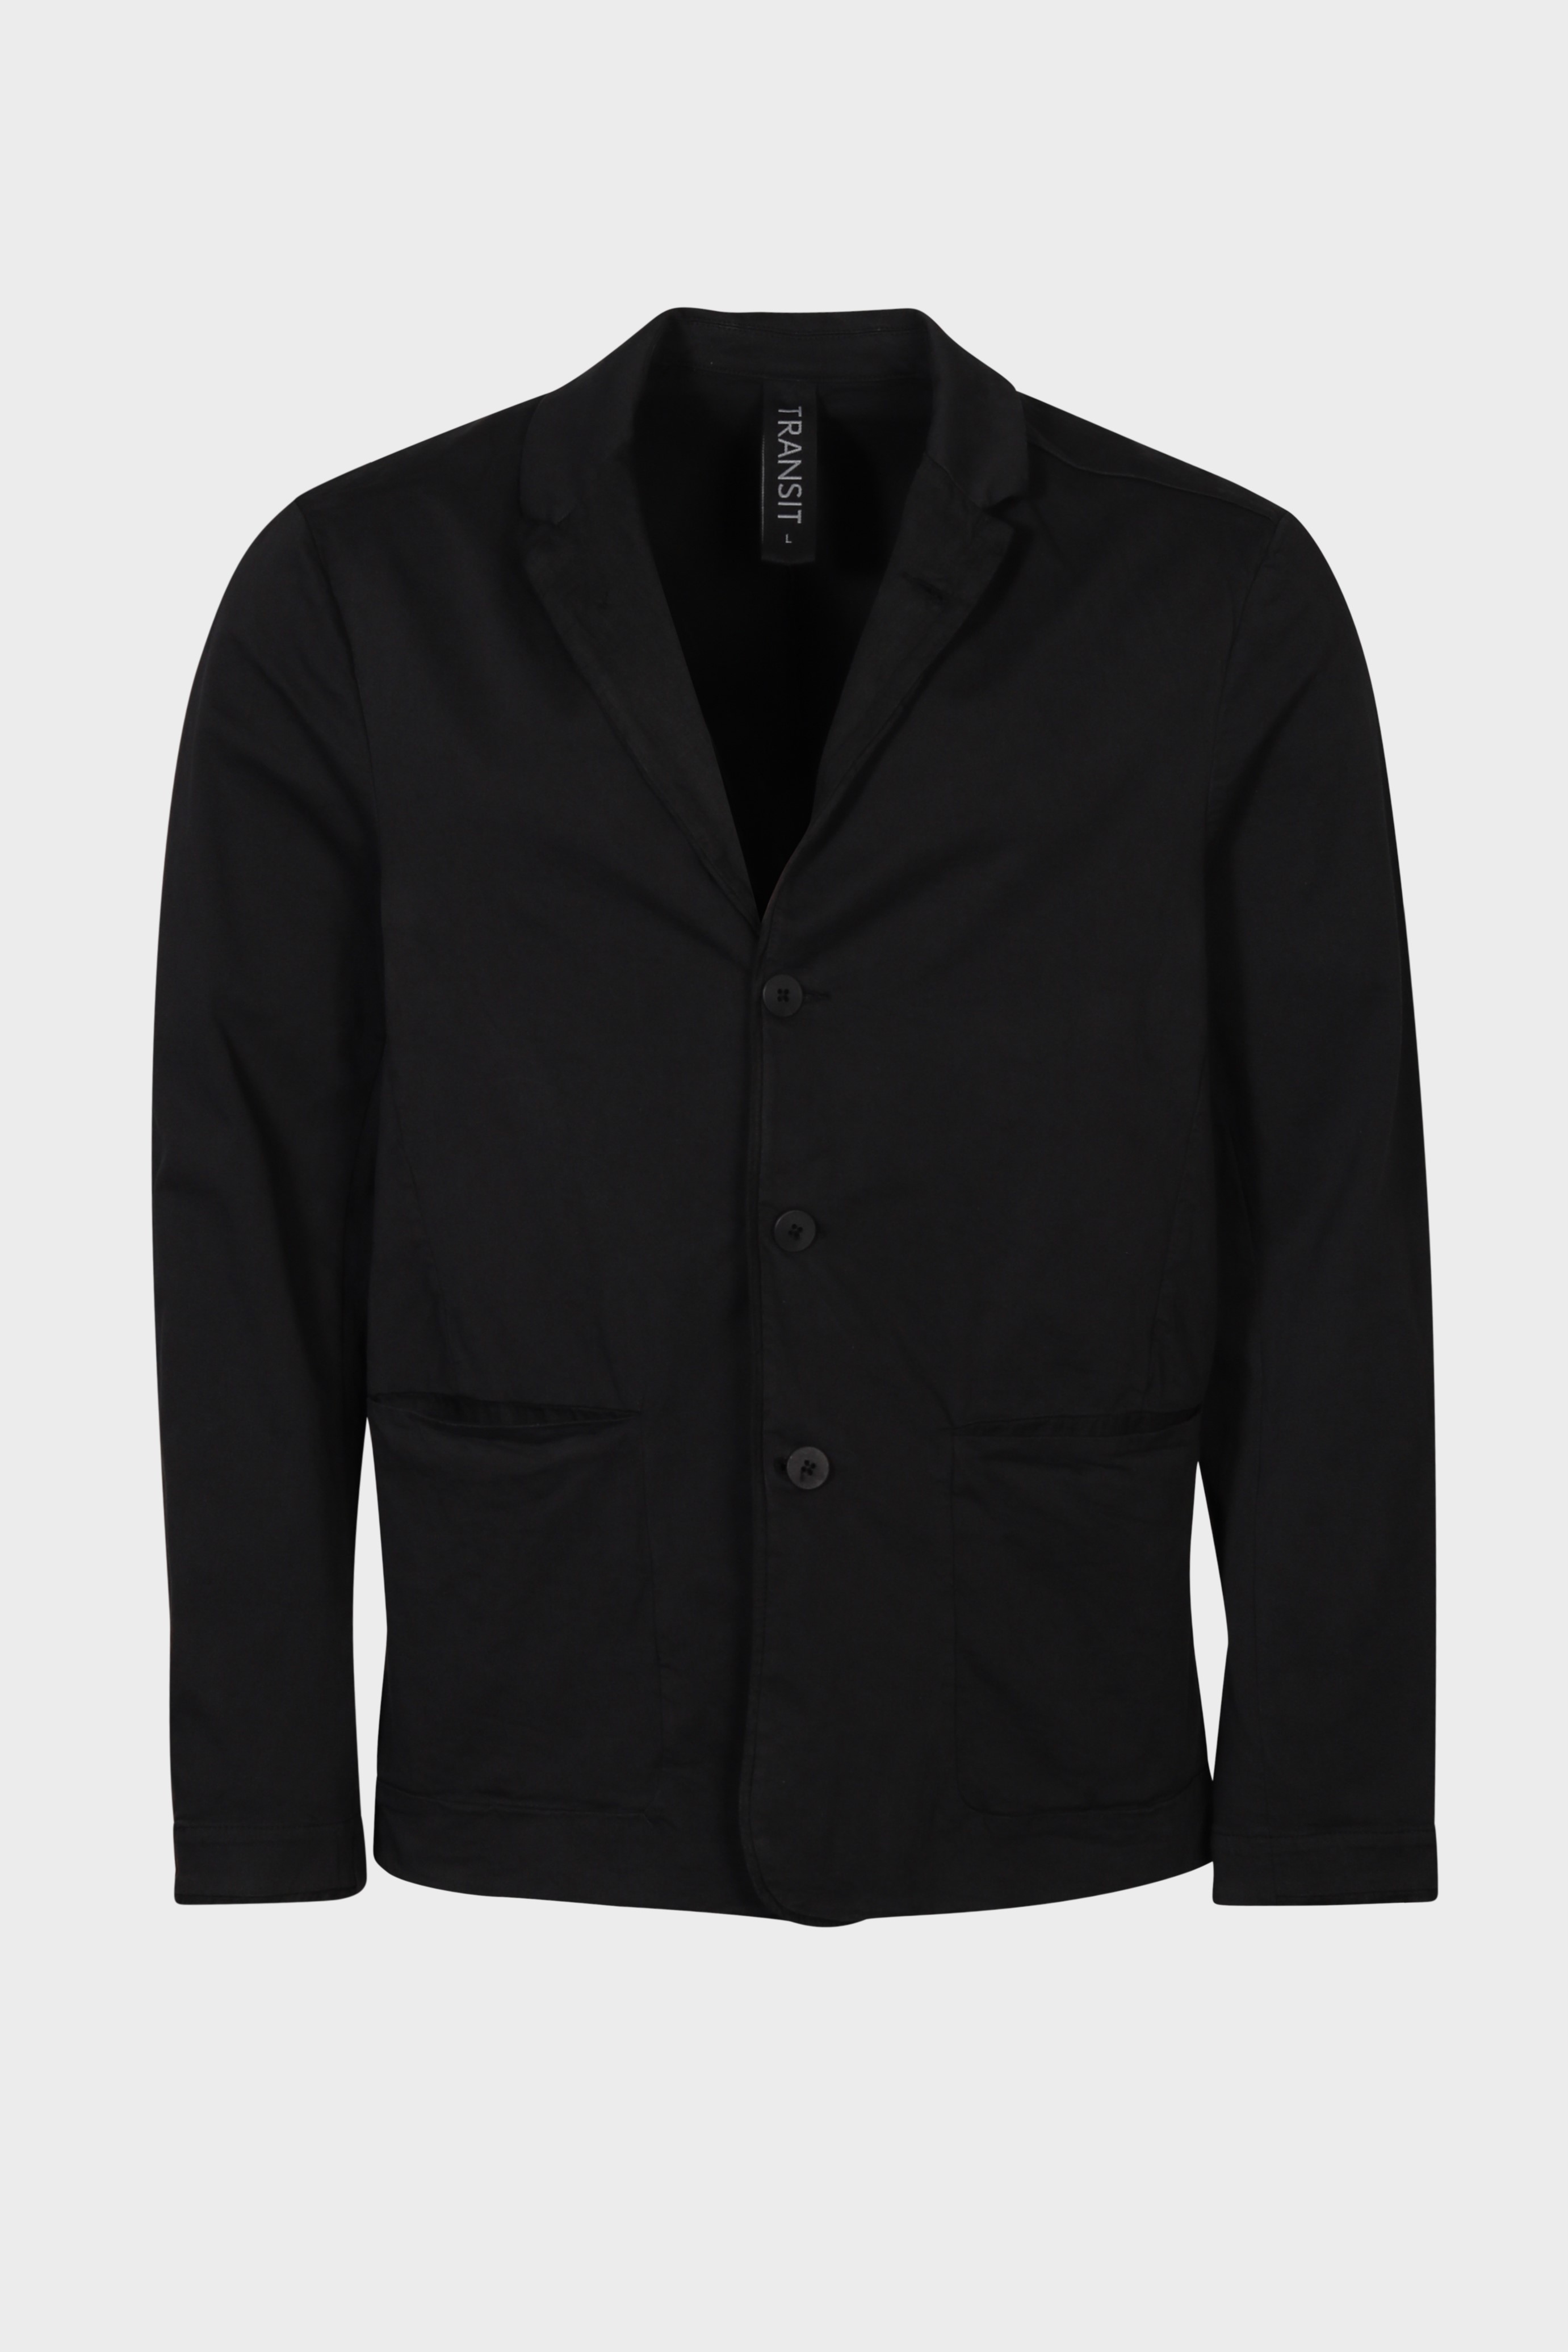 TRANSIT UOMO Cotton/Linen Jacket in Black M